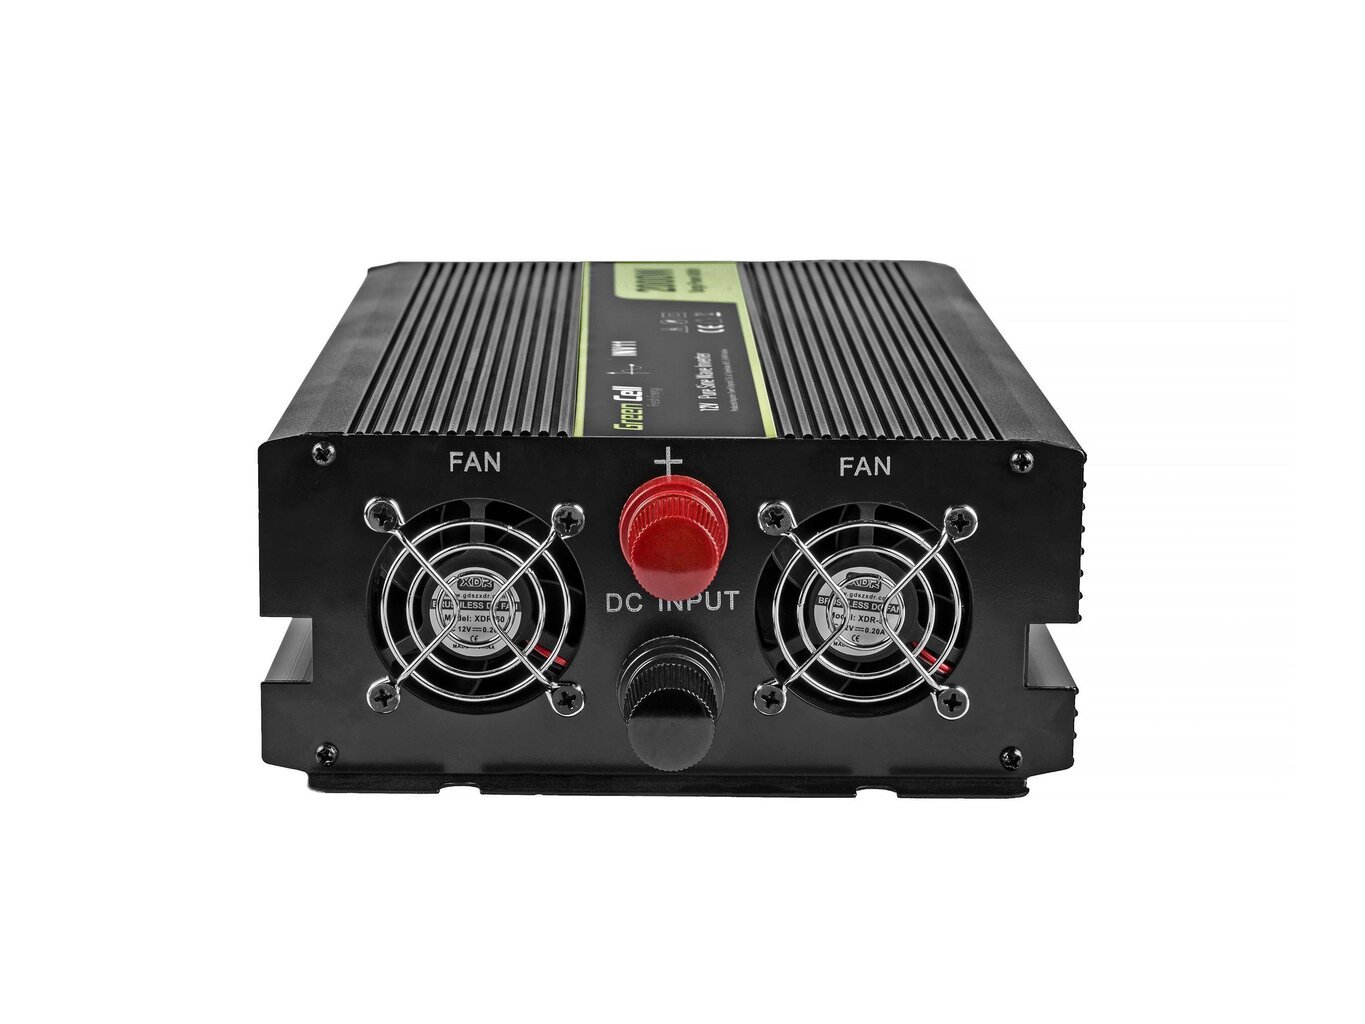 Green Cell® Power Inverter 12V to 230V 1000W/2000W